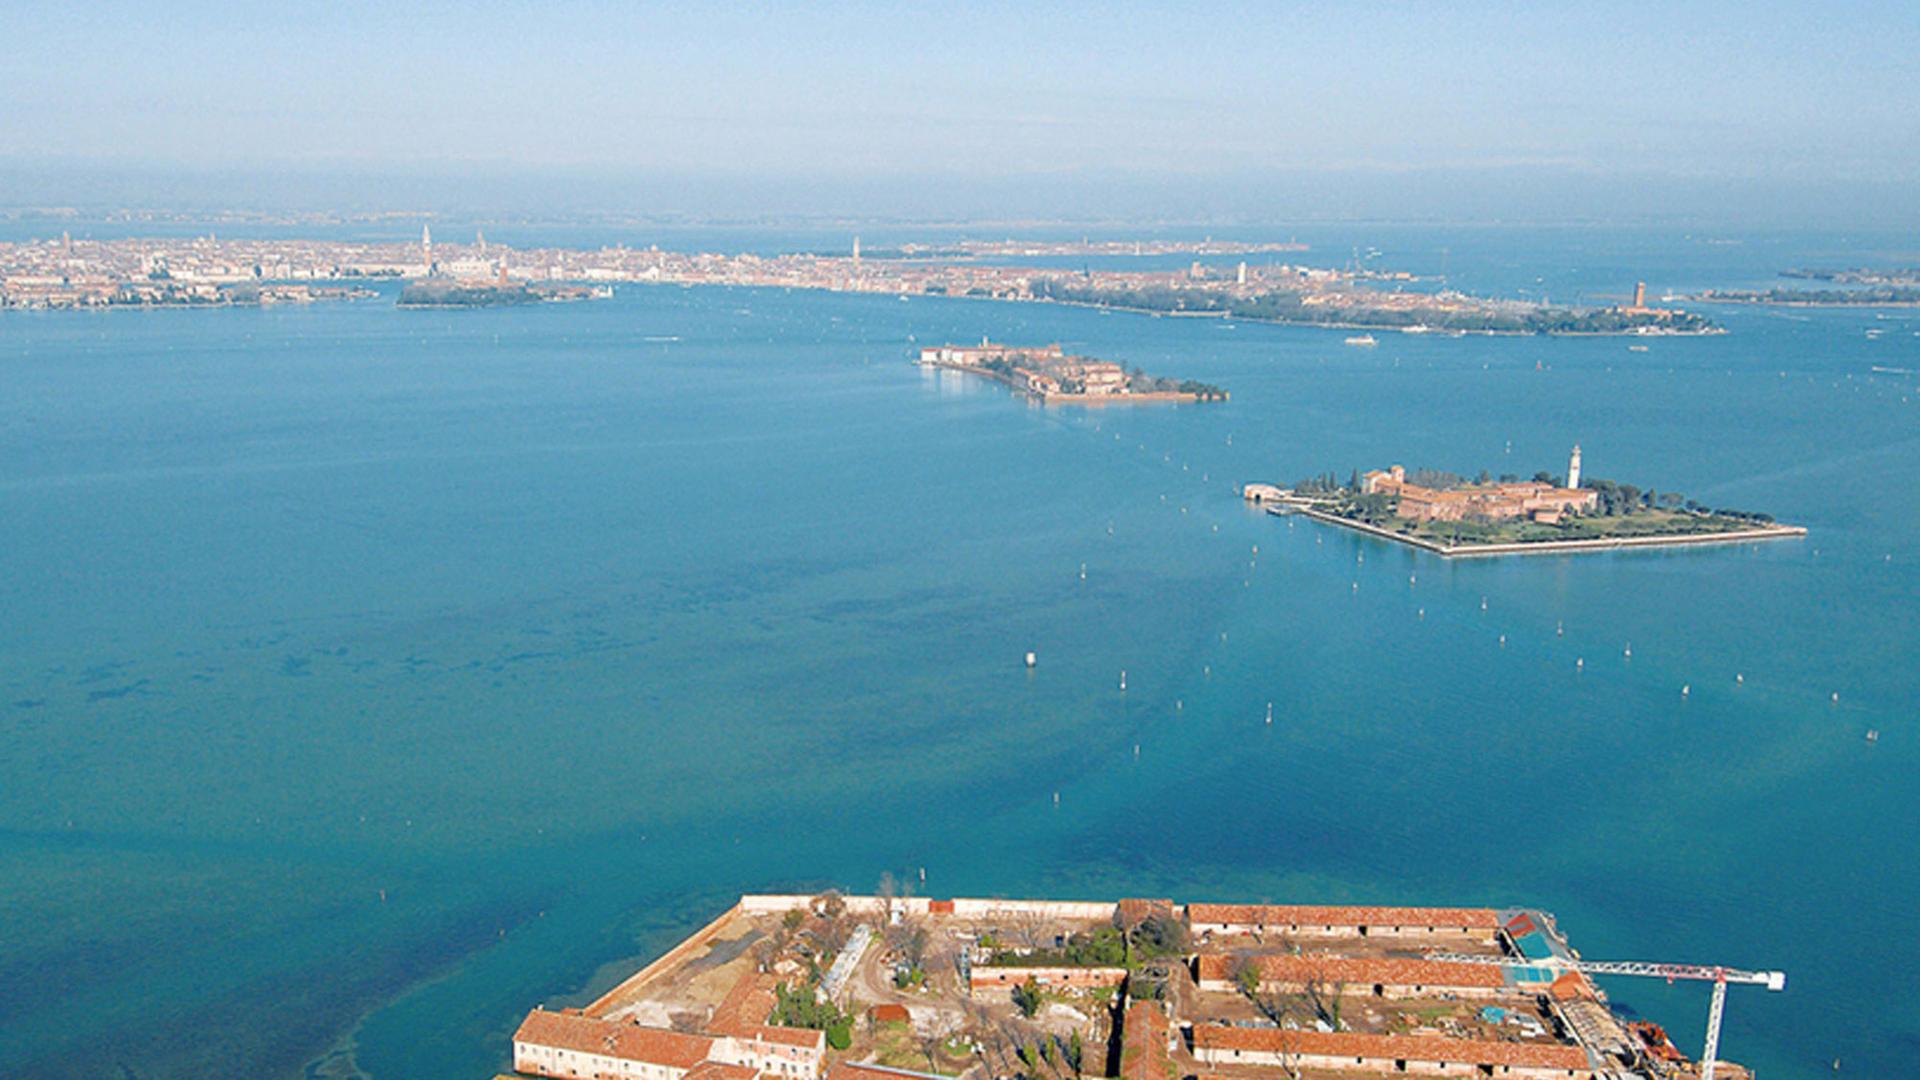 Lazzaretto Vecchio ist eine Insel in der Lagune von Venedig südlich der Stadt.